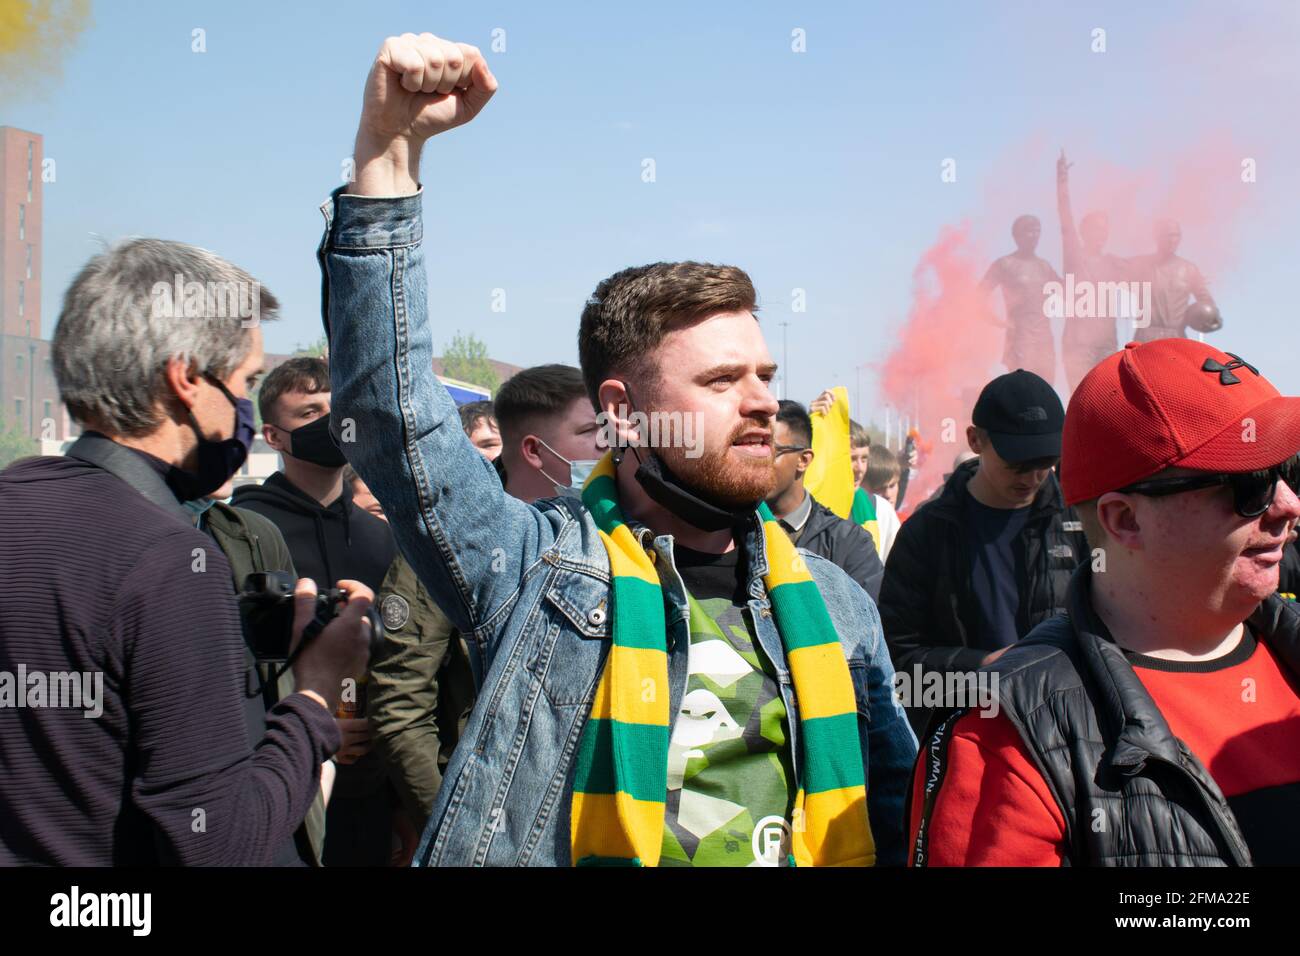 Protest gegen Glazer auf dem Old Trafford Fußballplatz. Supporter hält die Faust hoch und trägt einen grünen und goldenen Schal Stockfoto